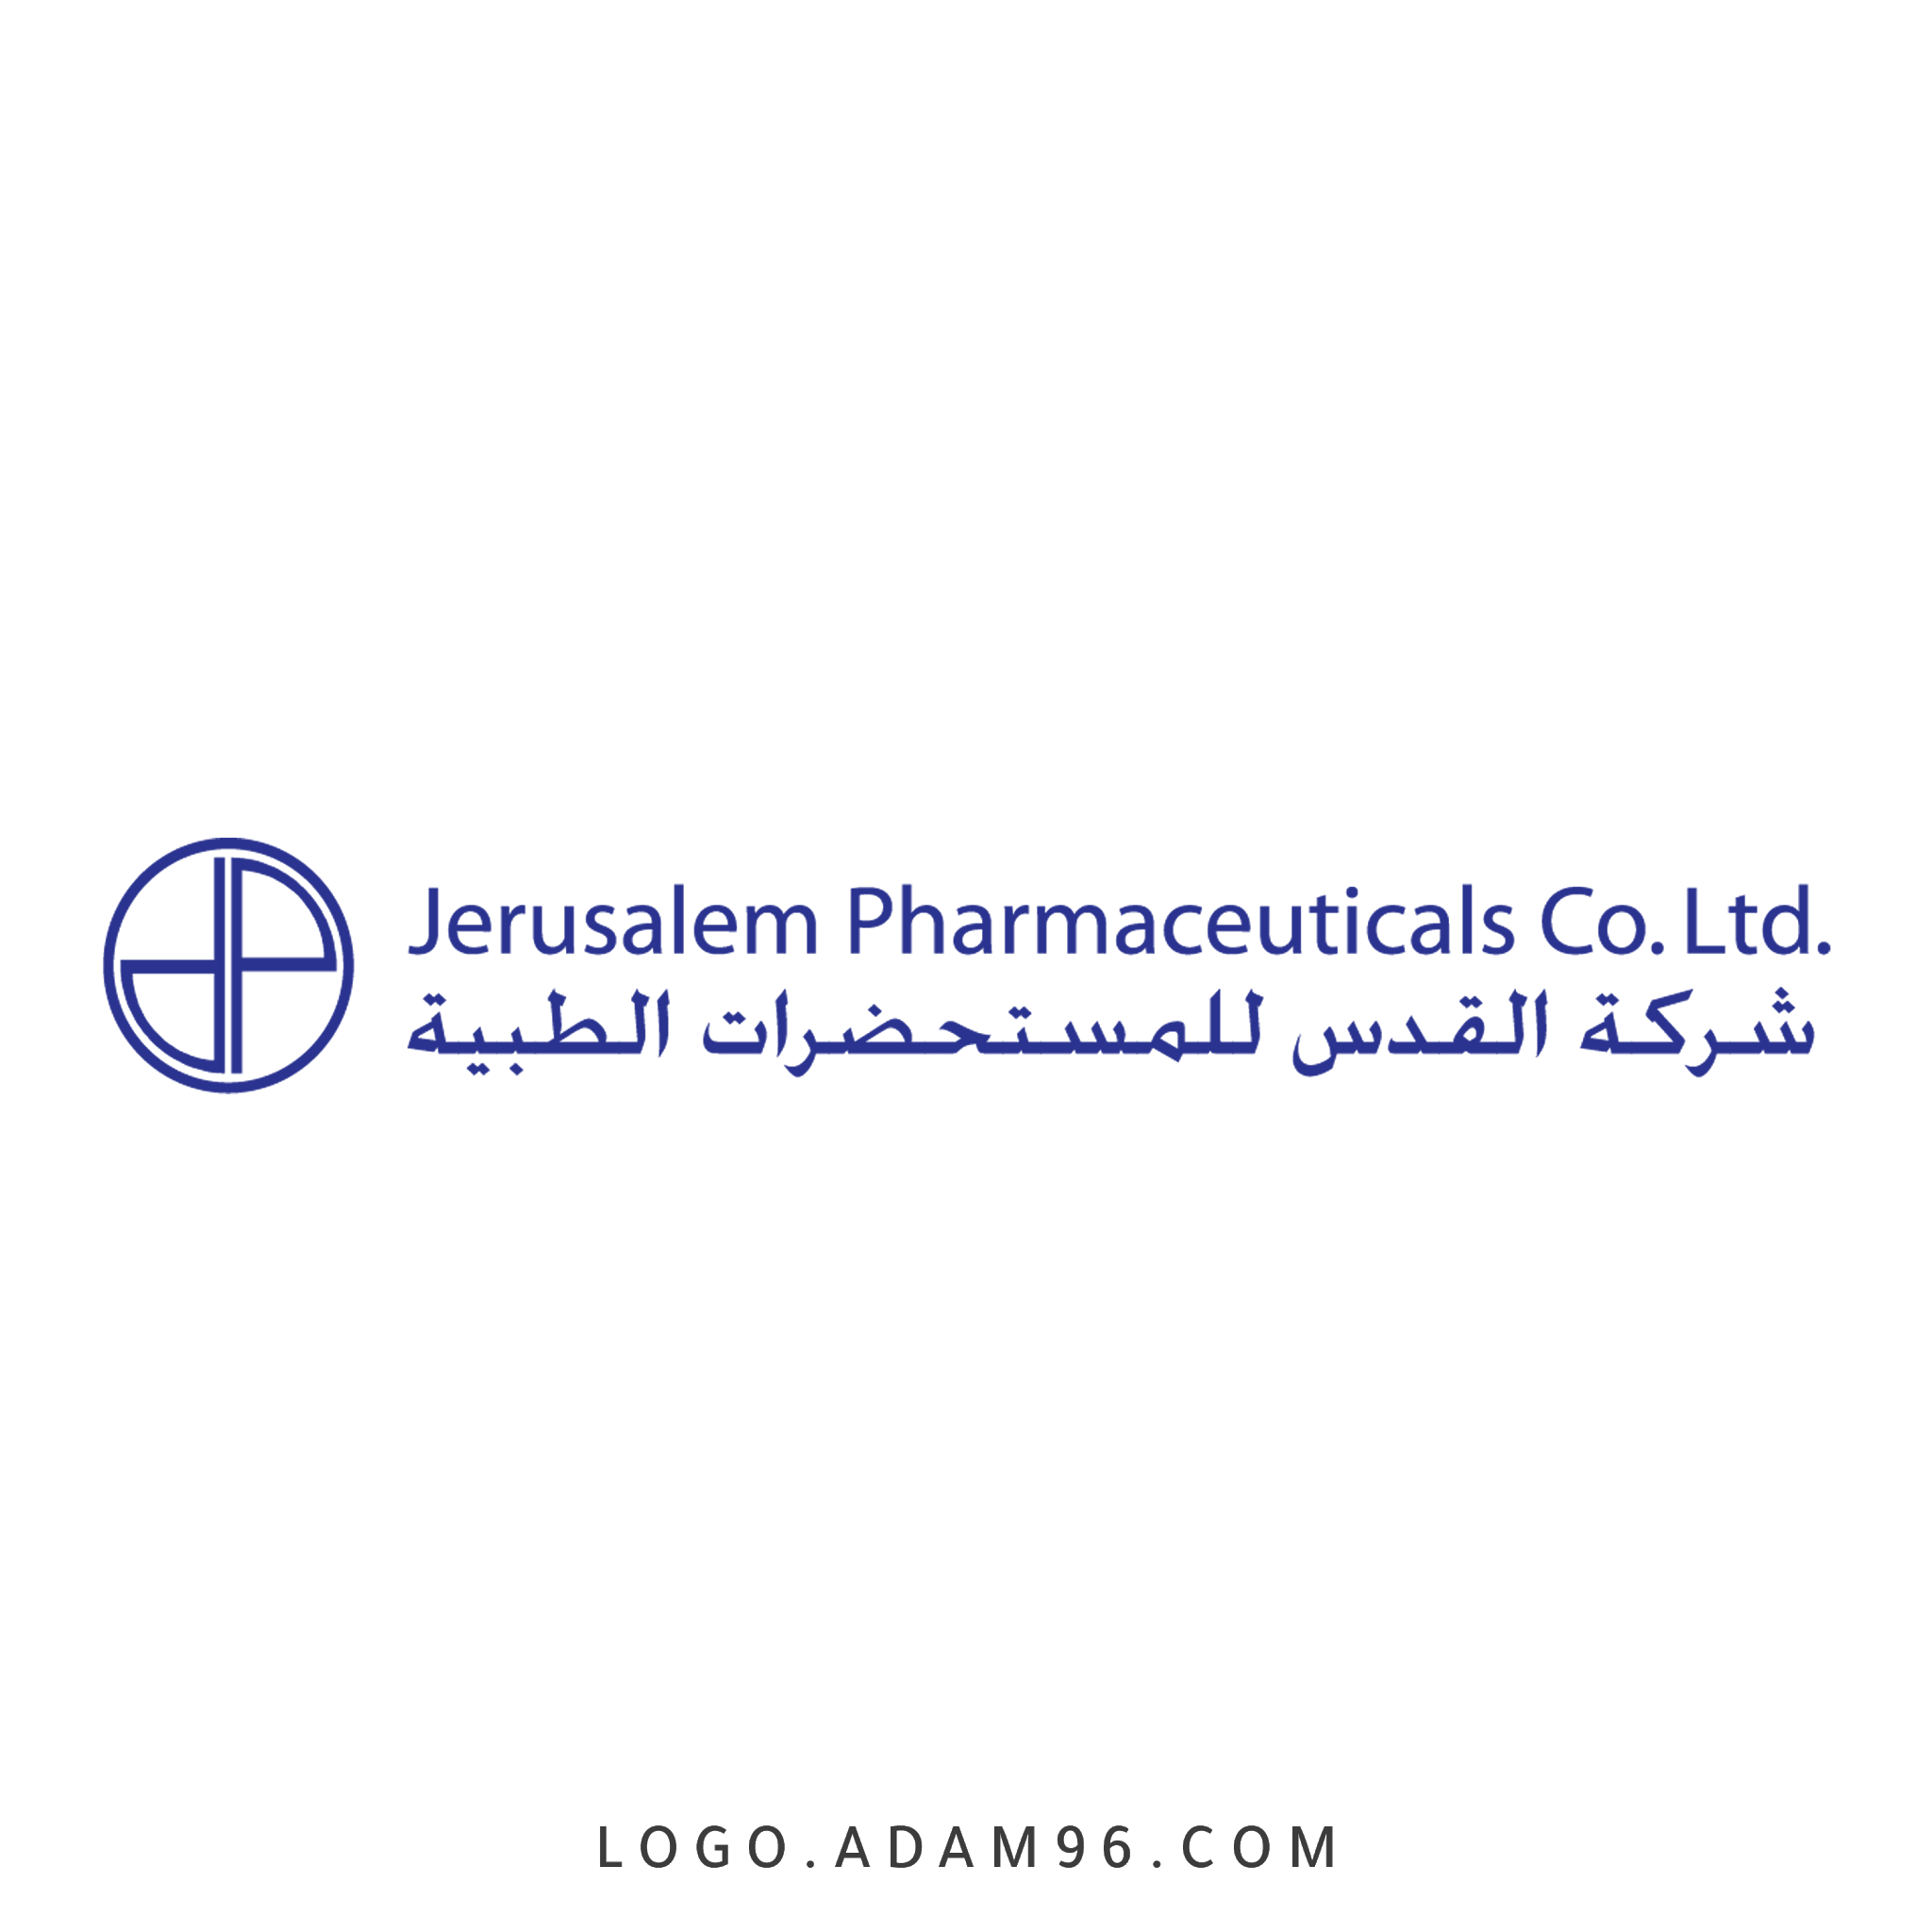 تحميل شعار شركة القدس للمستحضرات الطبية لوجو رسمي PNG